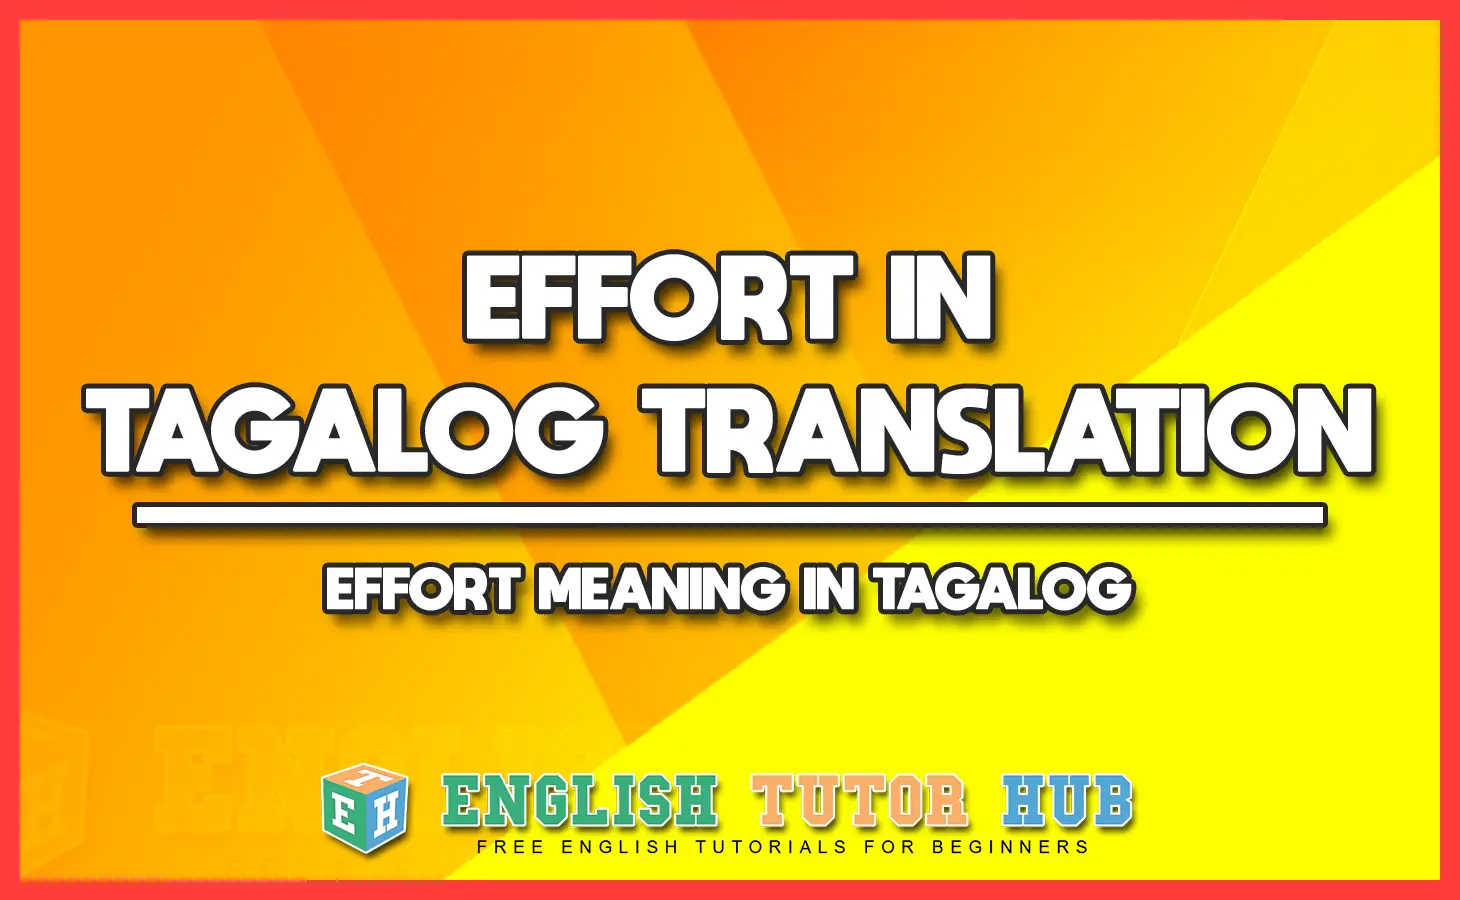 EFFORT IN TAGALOG TRANSLATION - EFFORT MEANING IN TAGALOG